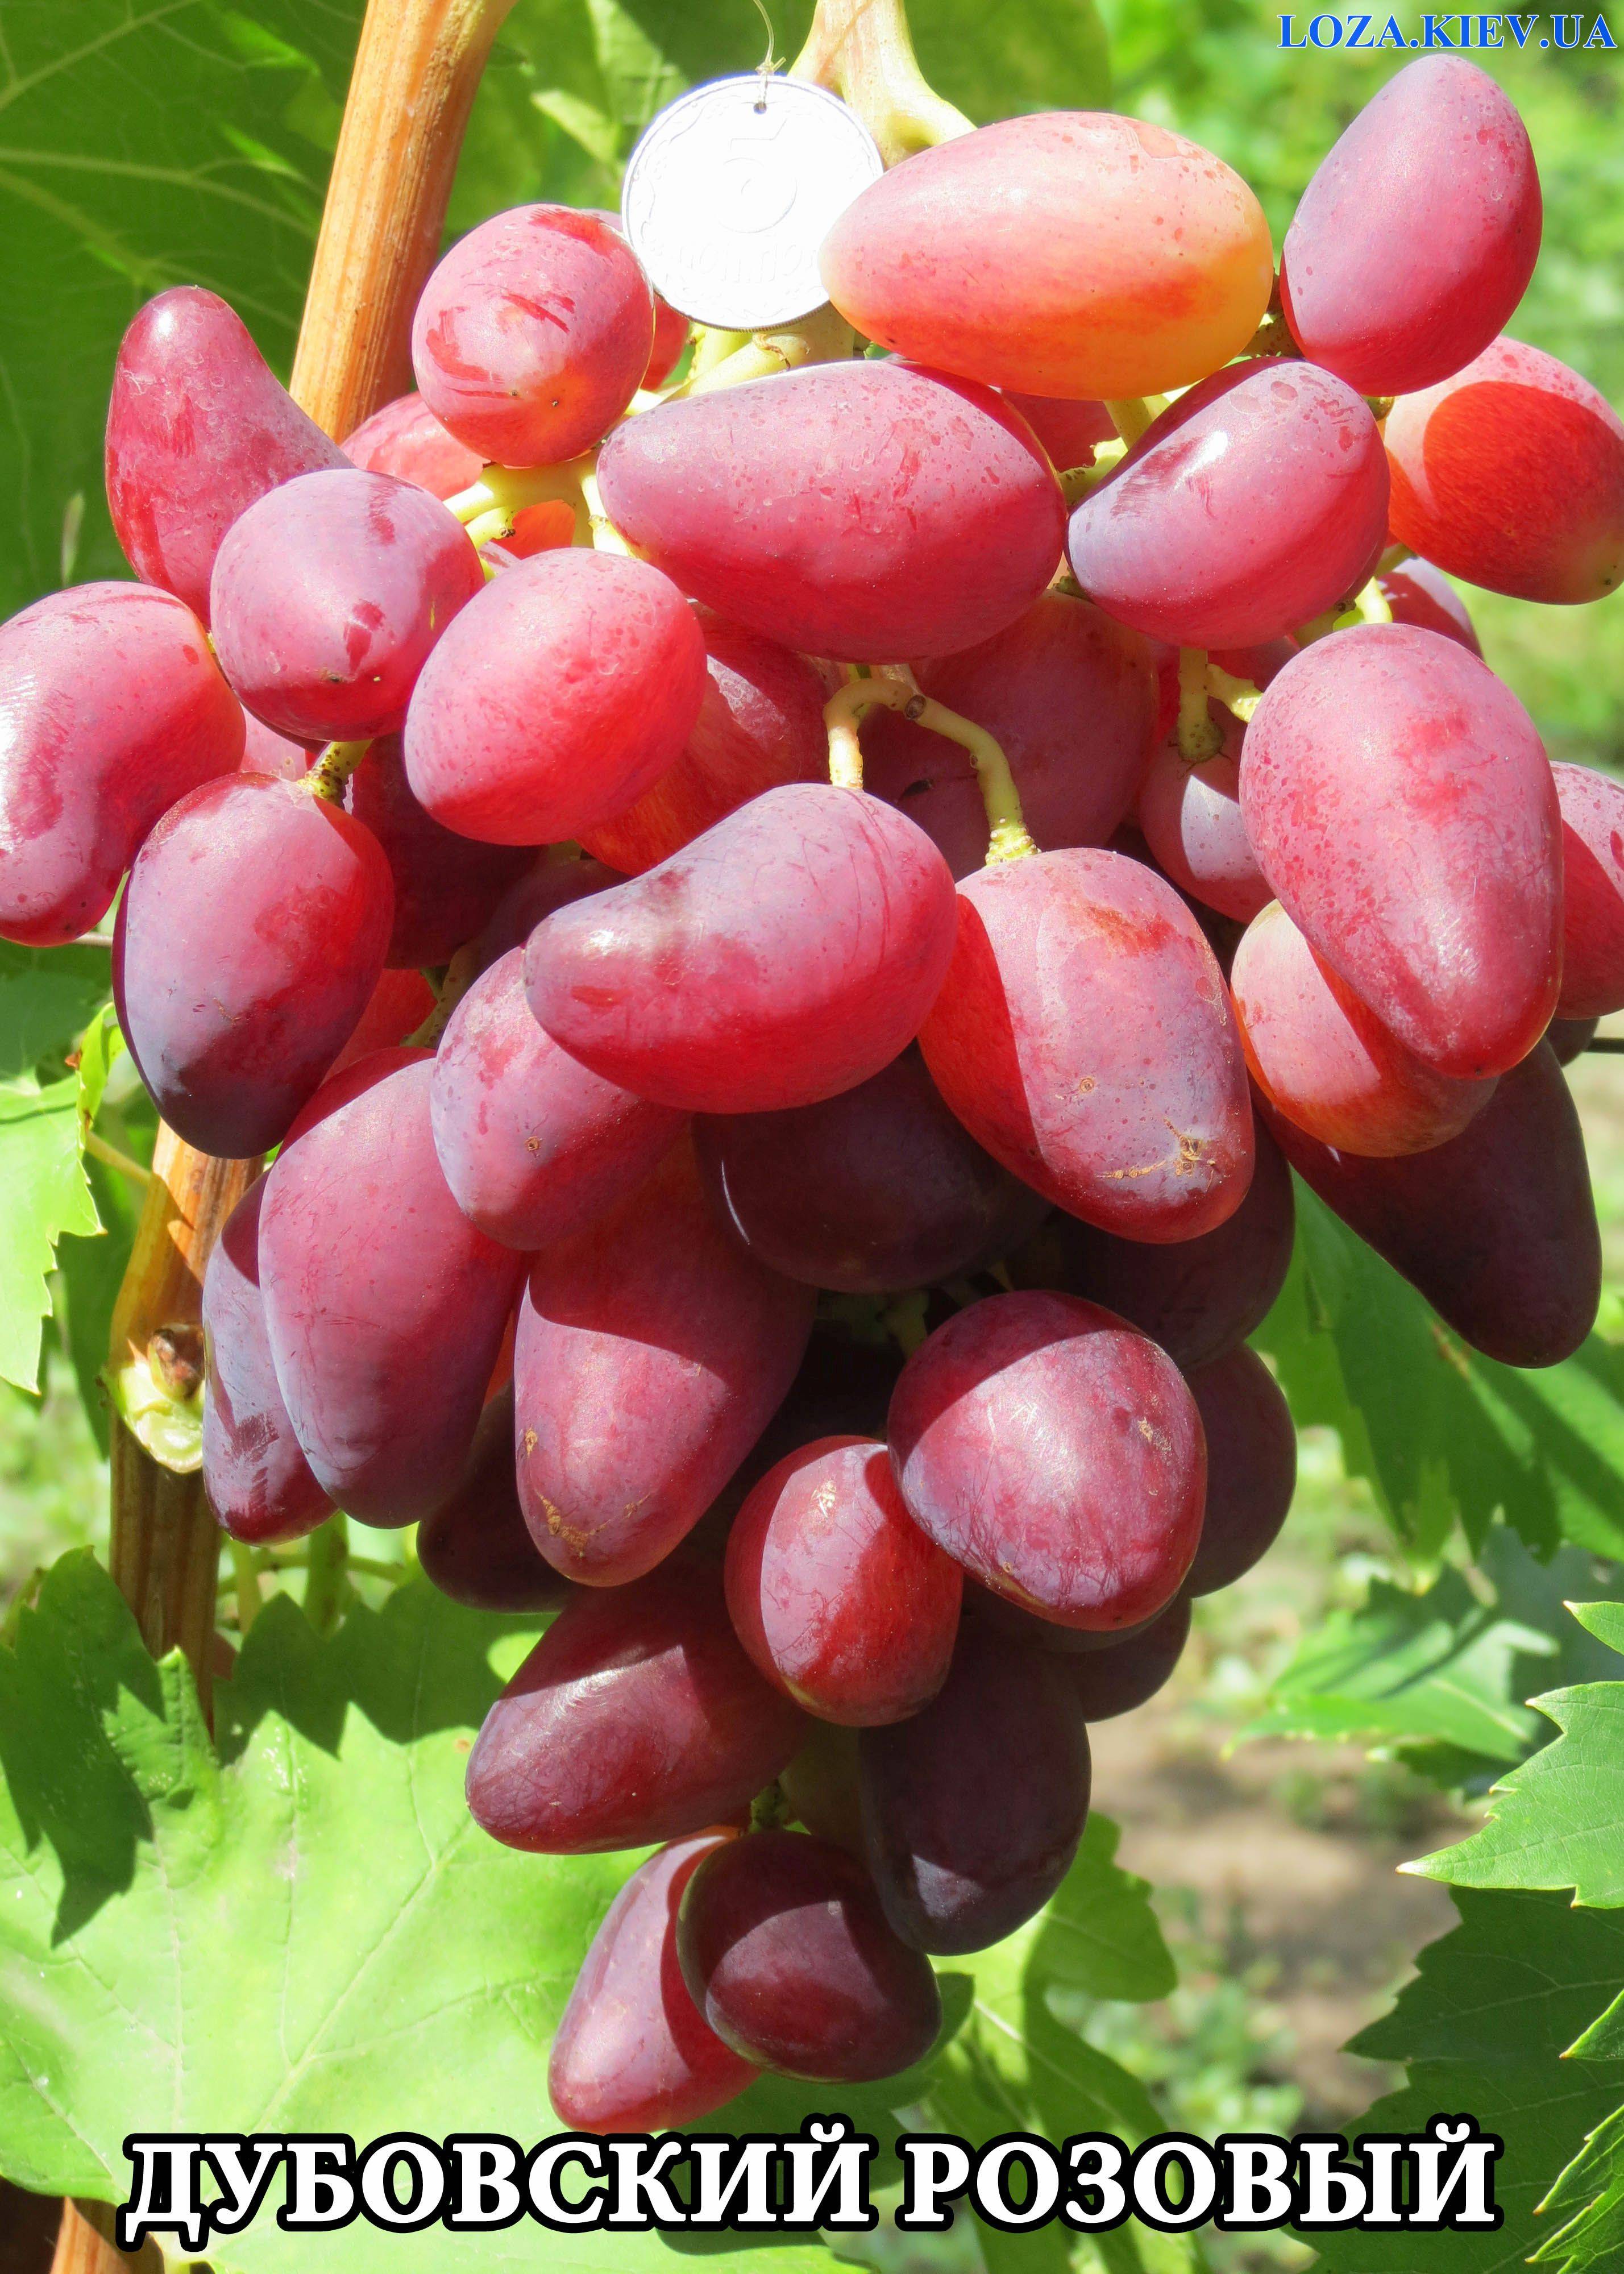 ✅ о винограде дубовский розовый: описание и характеристики сорта, посадка и уход